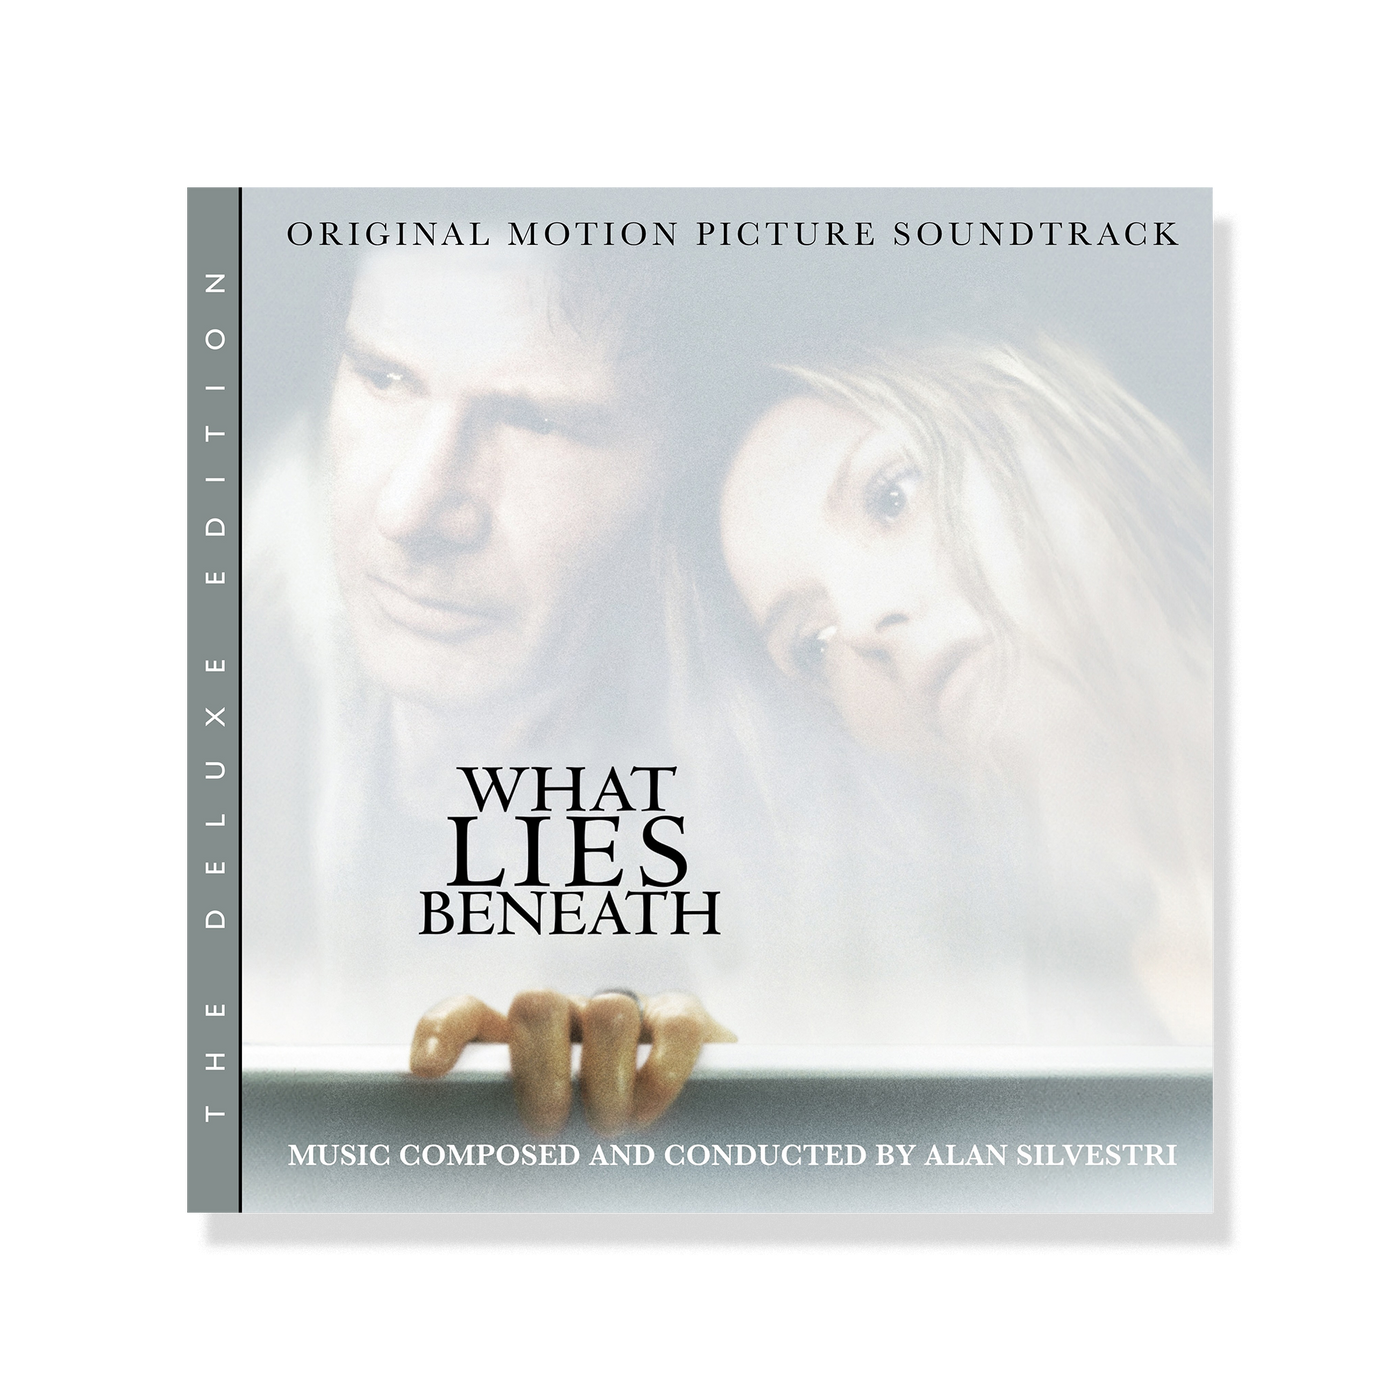 Alan Silvestri – What Lies Beneath (Original Motion Picture Soundtrack - Deluxe Edition) (Digital Album)